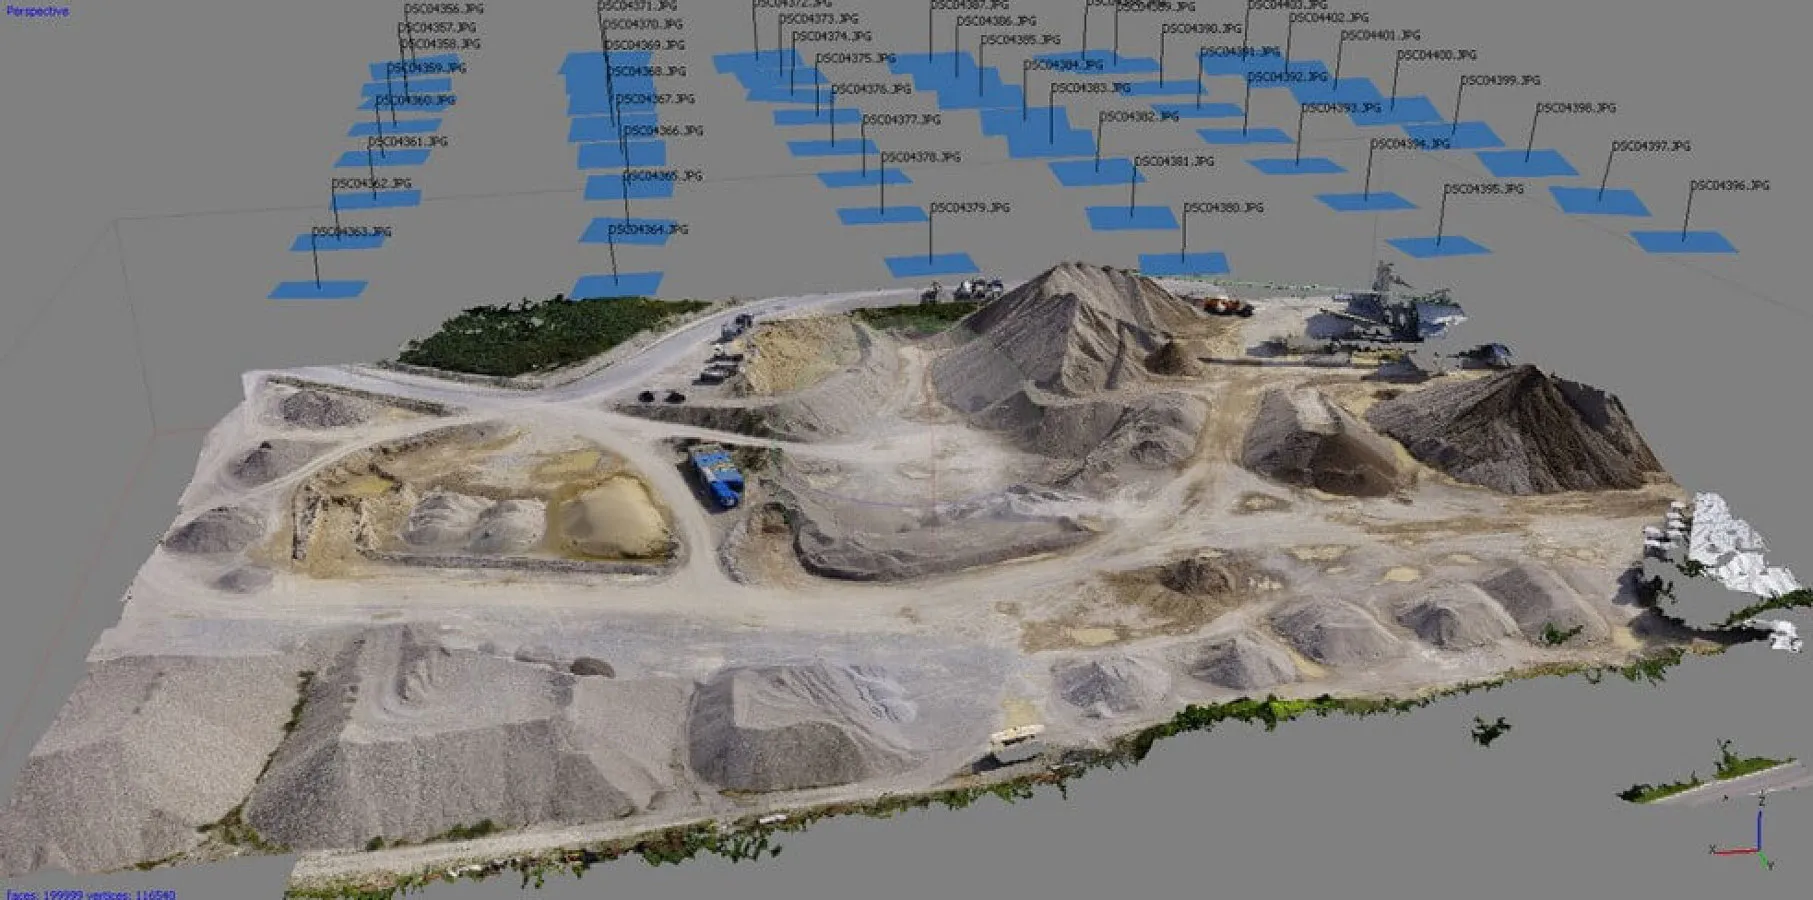 Photogrammetrie-Voransicht einer 3D-Visualisierung, errechnet aus Einzelbildern eines Drohnen-Vermessungsfluges